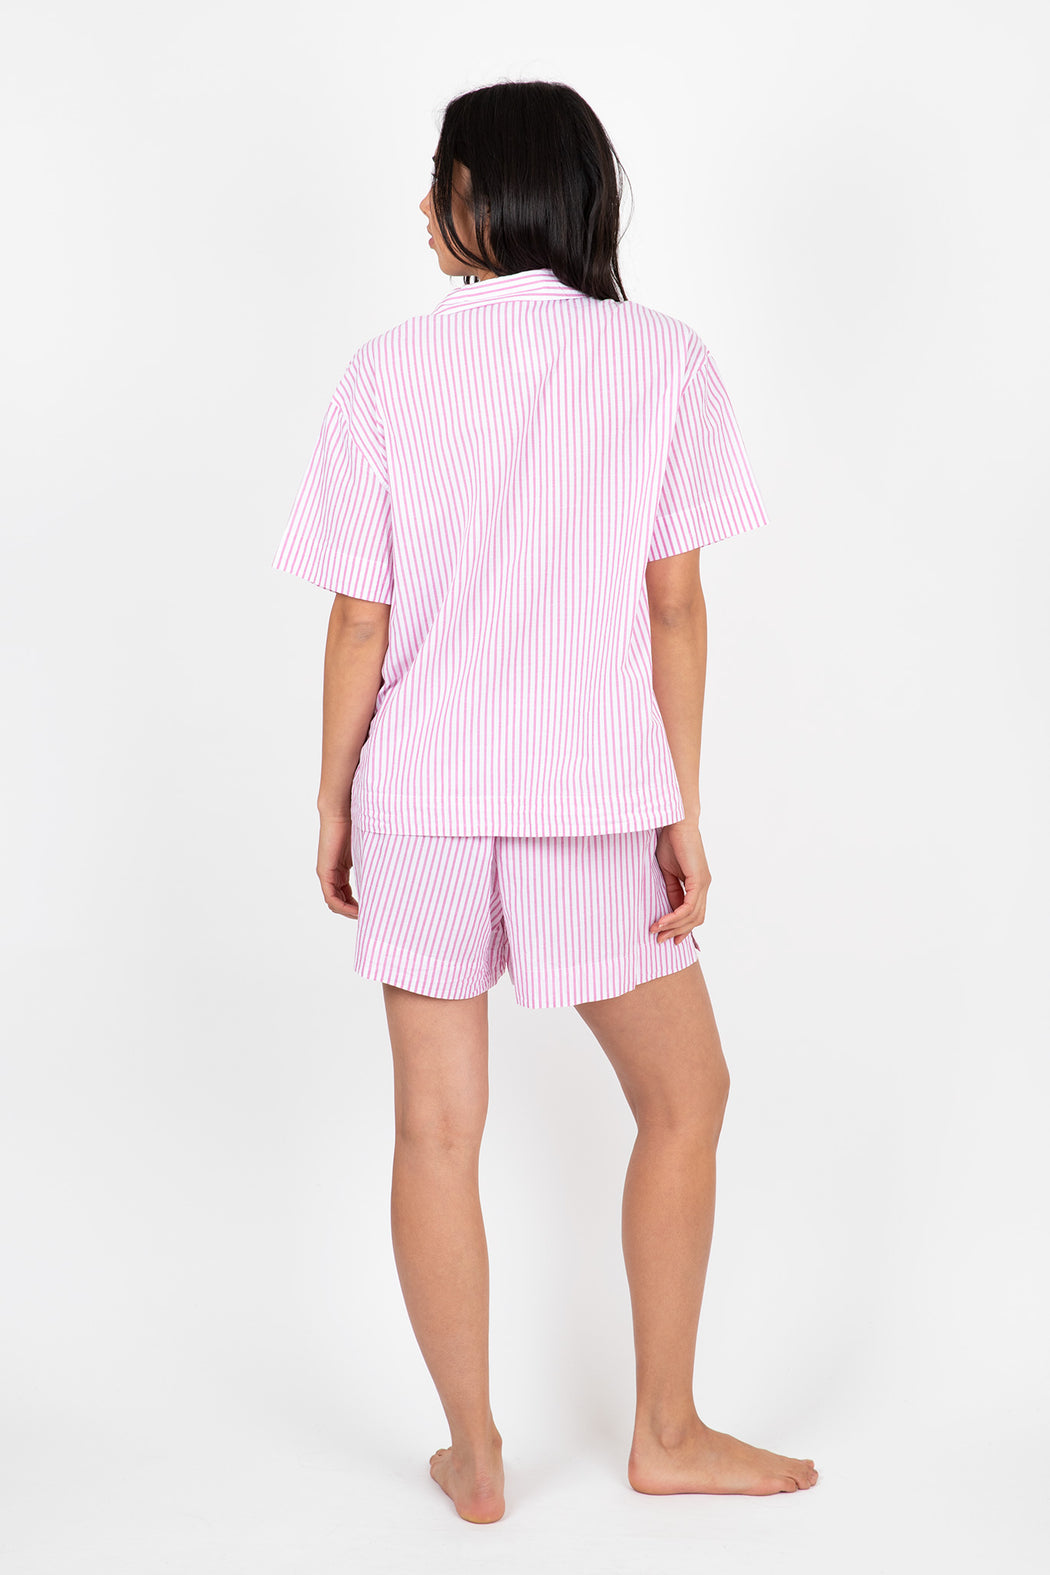 Eberjey-Organic-Sandwashed-Cotton-Printed-Short-PJ-Set-Rose-Cloud-Stripe